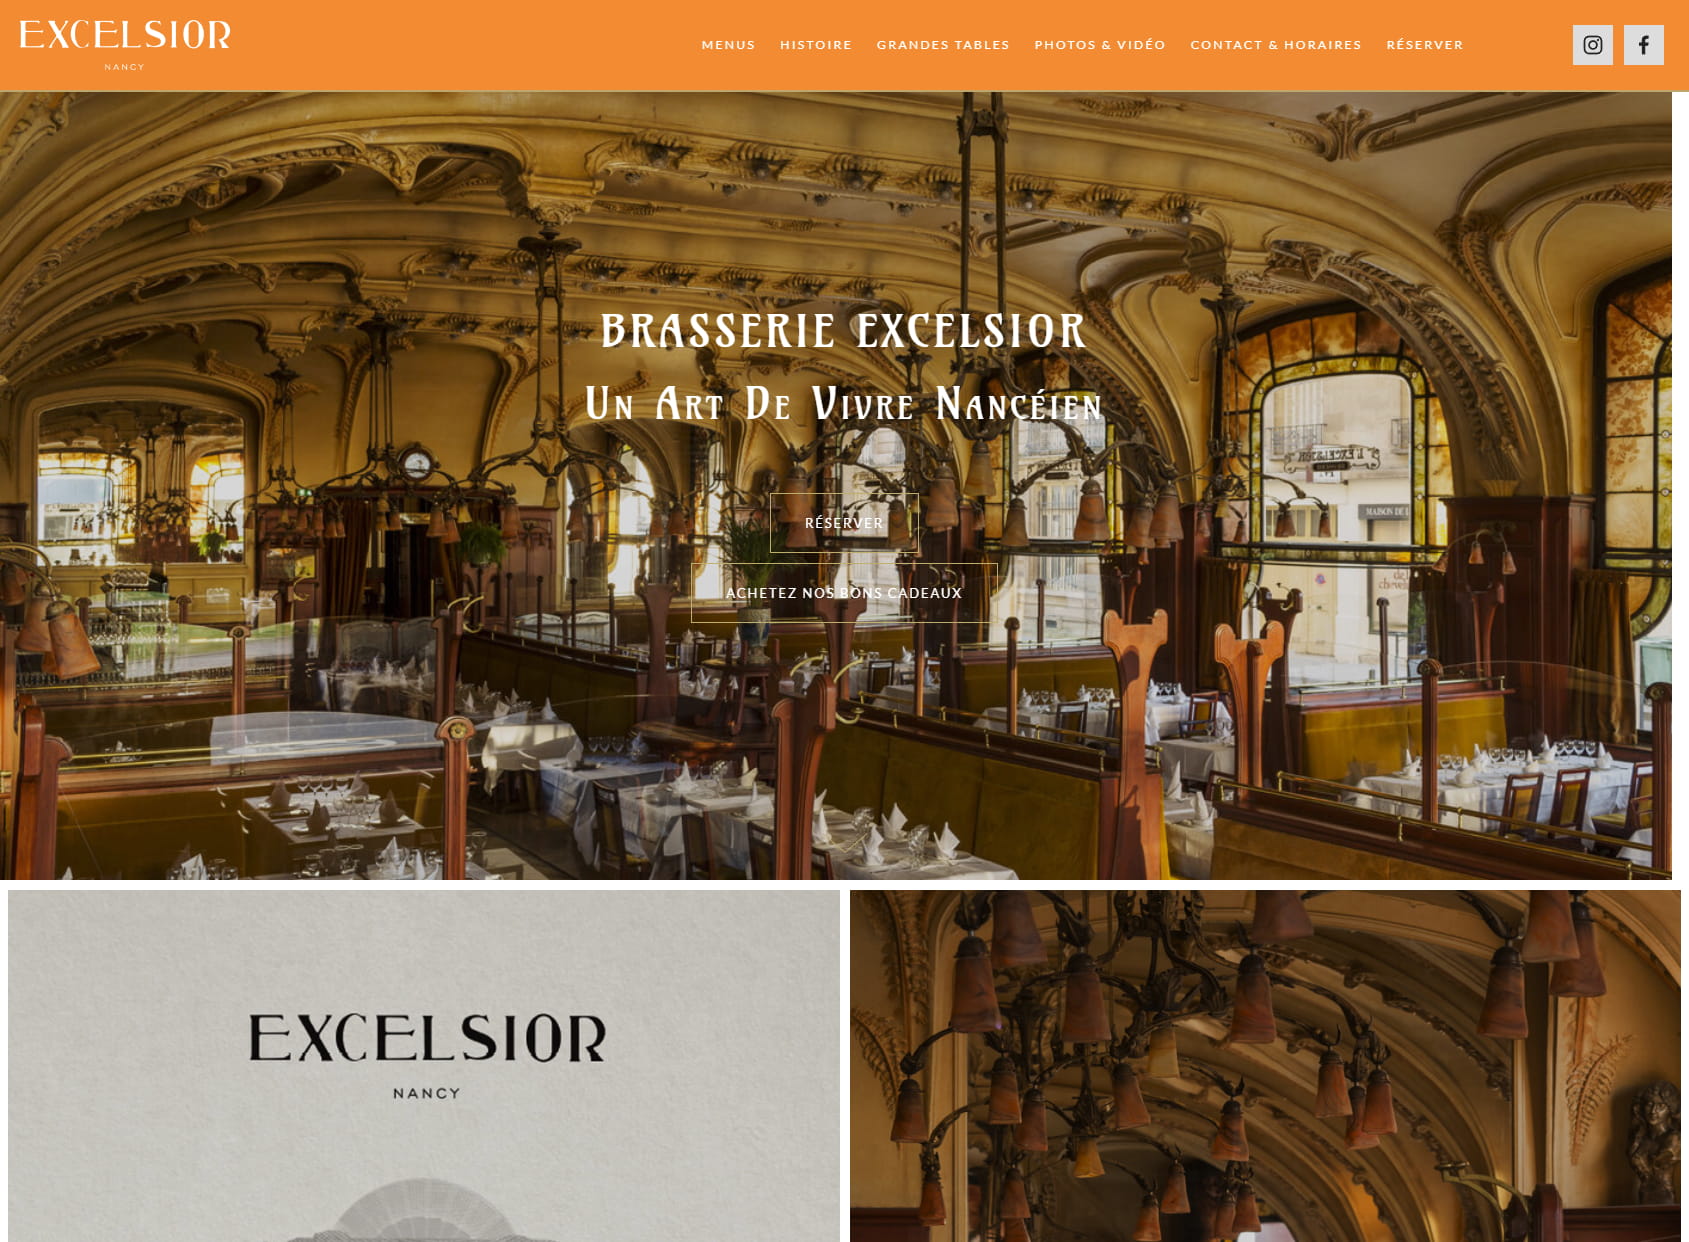 Brasserie L'Excelsior